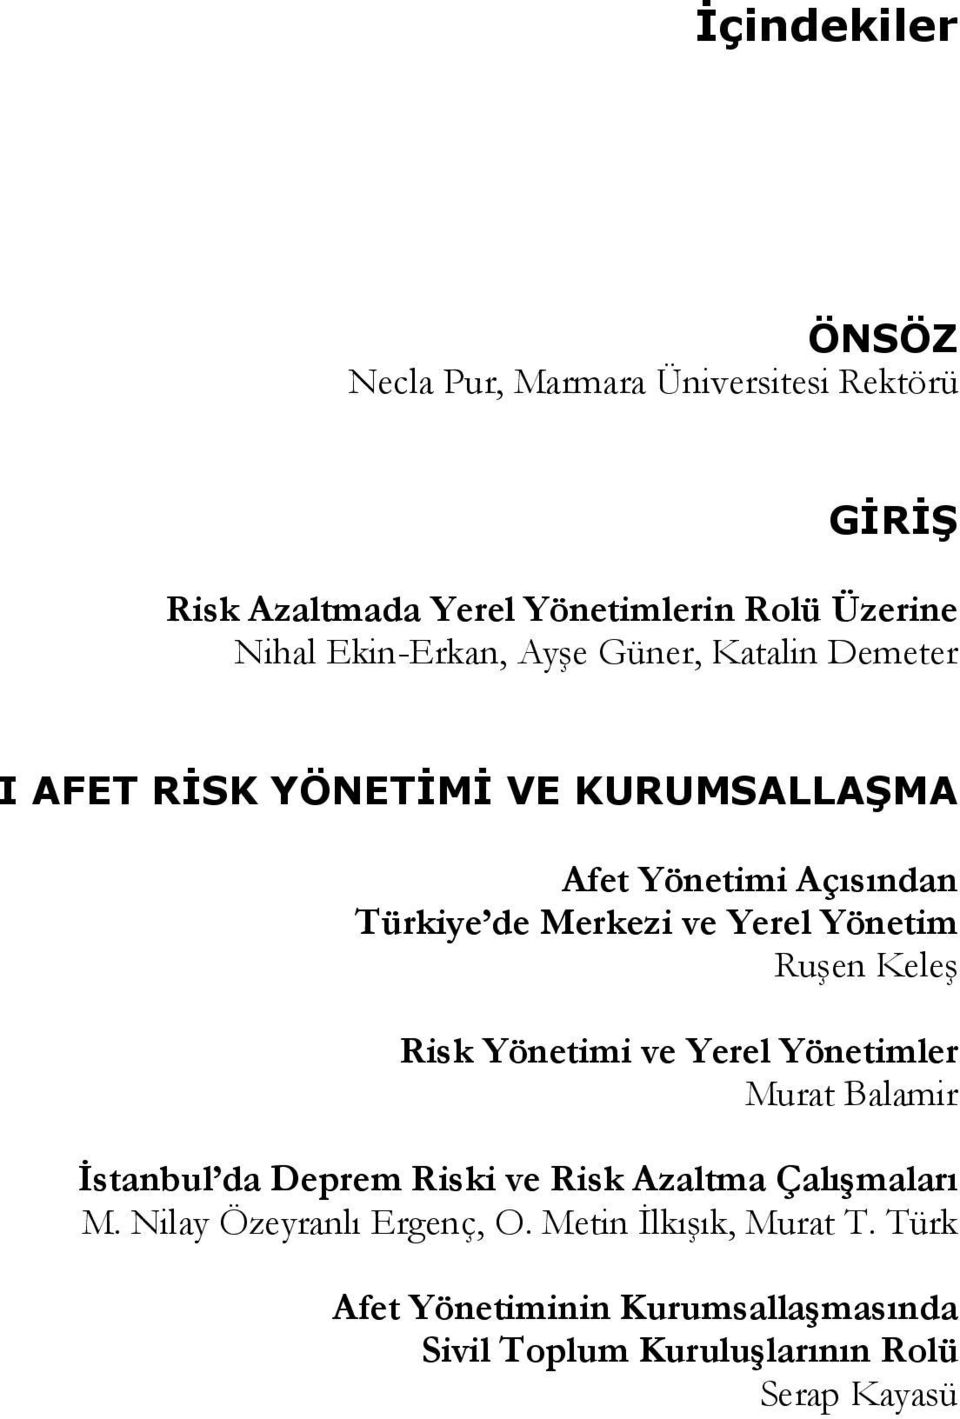 Yerel Yönetim Ruşen Keleş Risk Yönetimi ve Yerel Yönetimler Murat Balamir İstanbul da Deprem Riski ve Risk Azaltma Çalışmaları